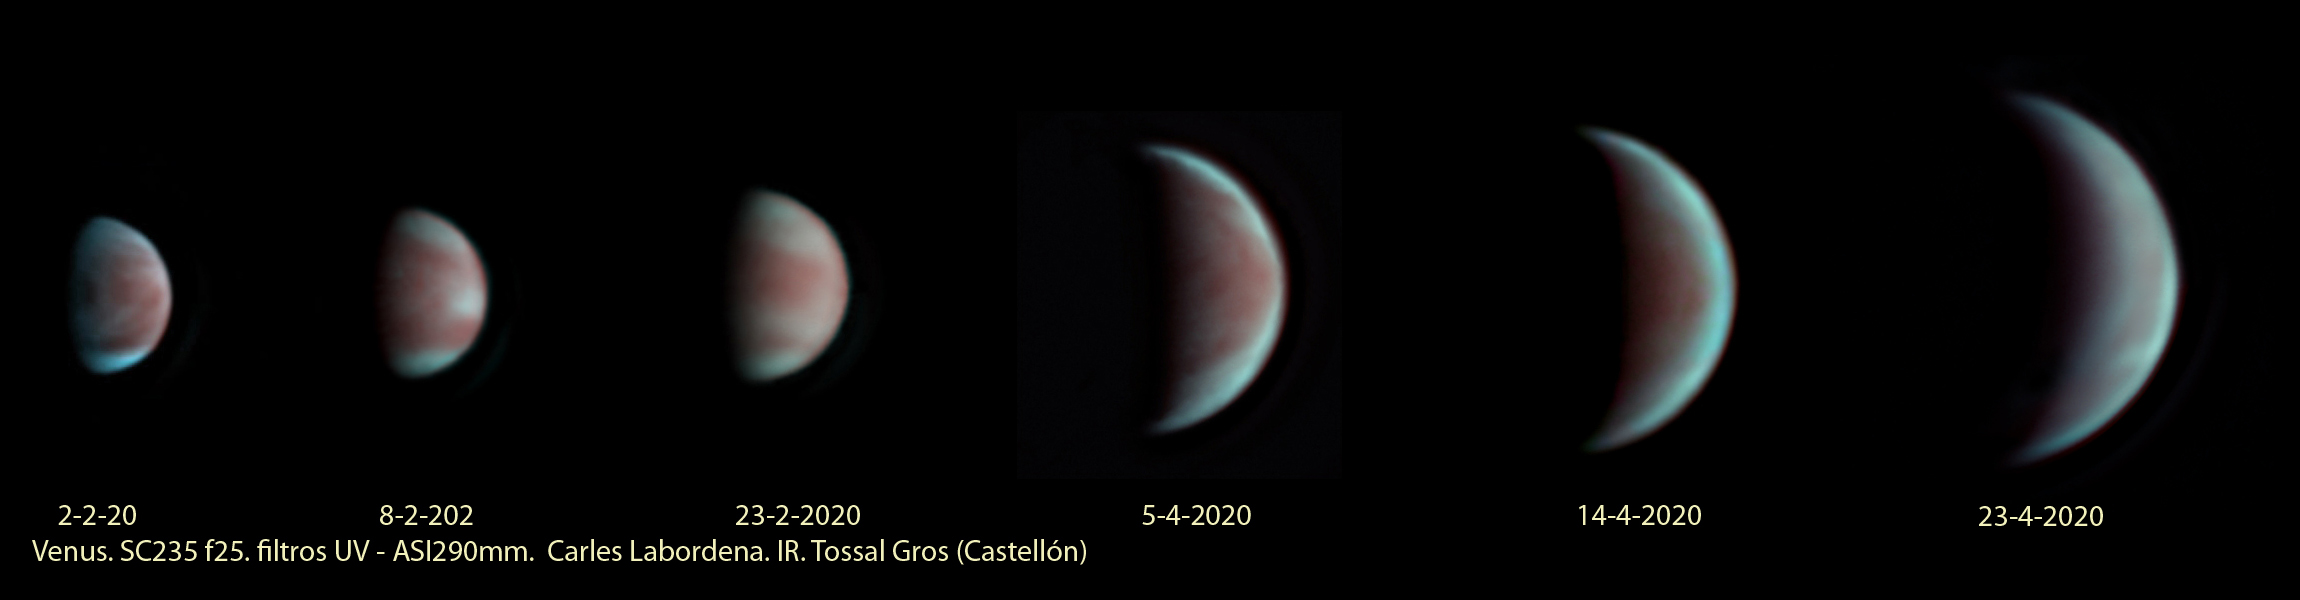 Fases de Venus en color